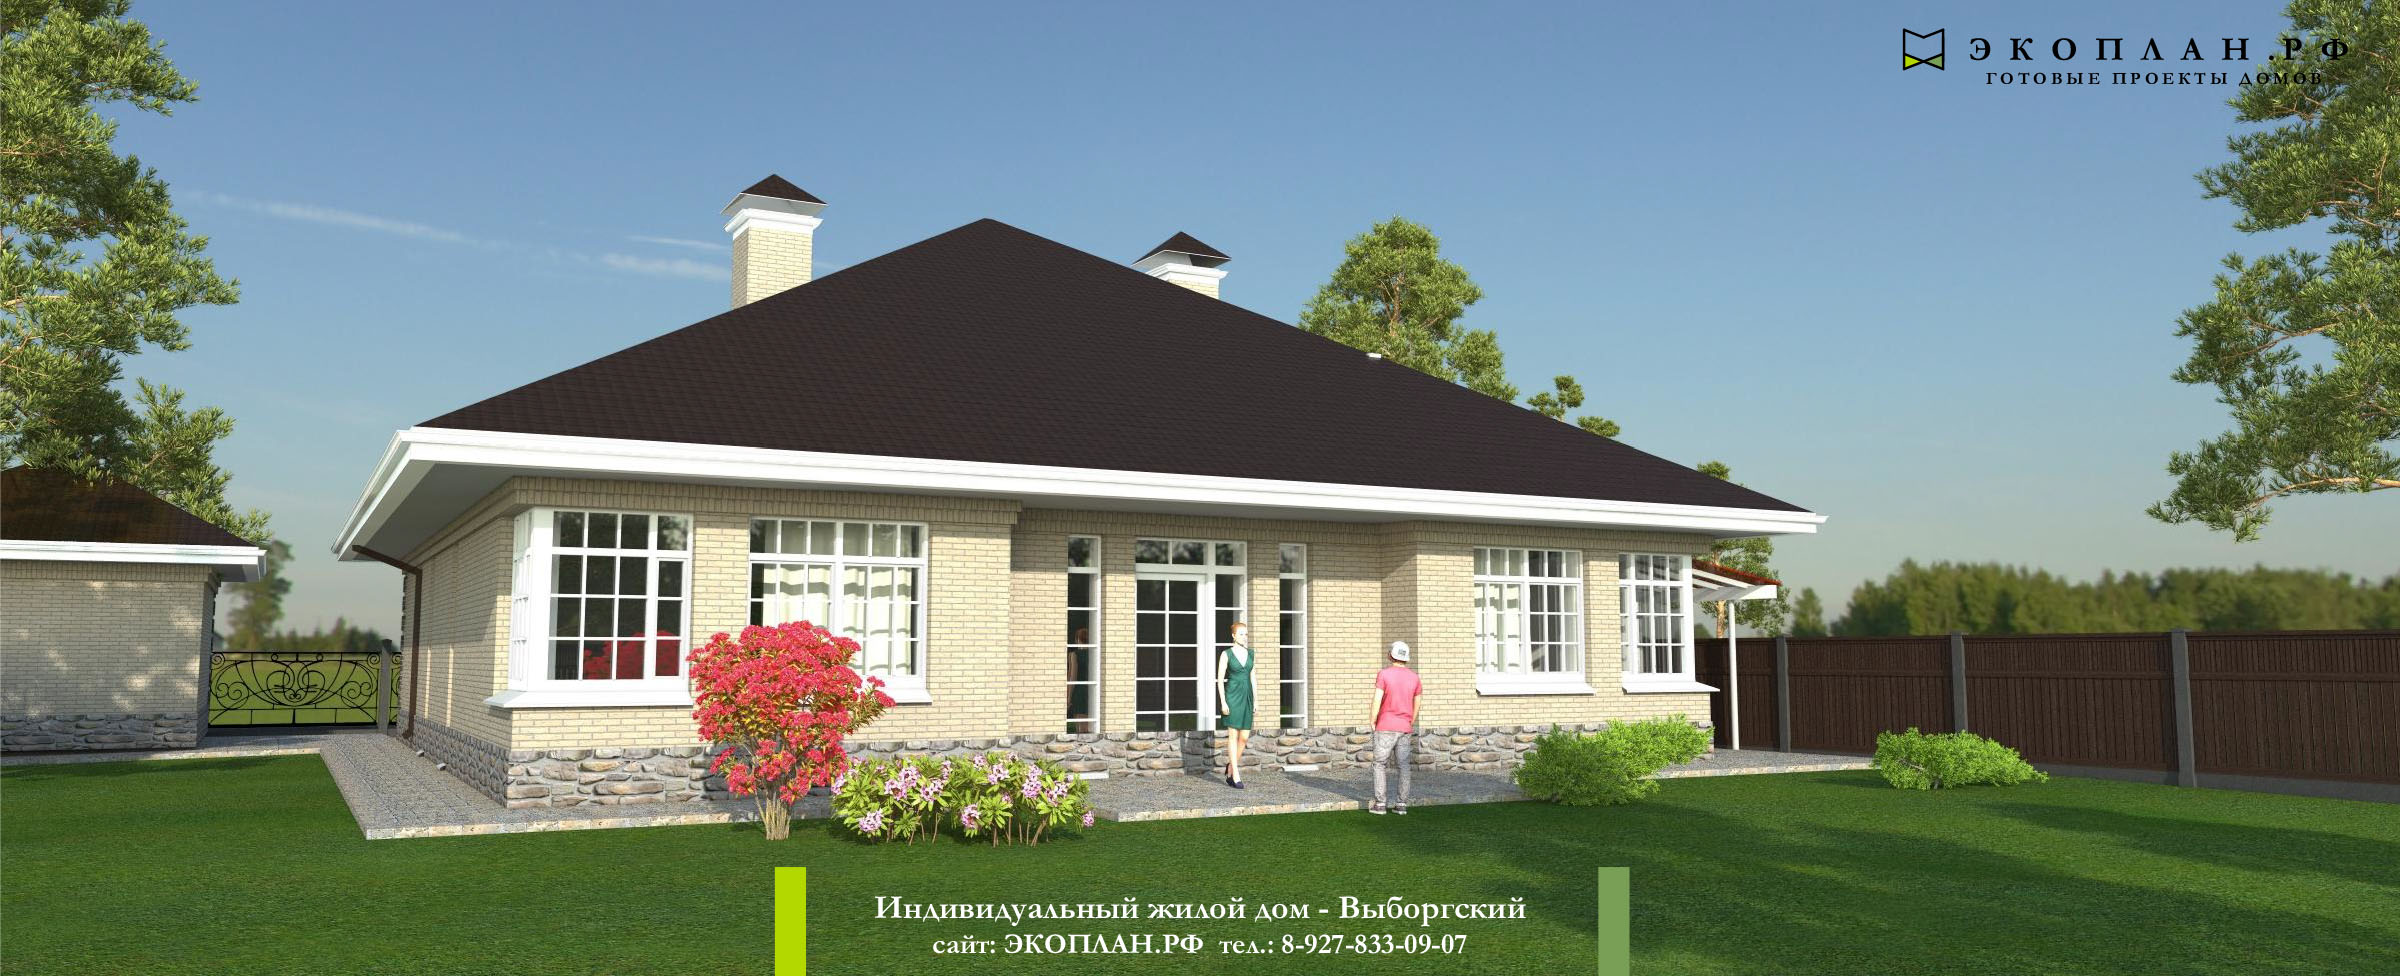 Готовый проект дома -Выборгский - Экоплан.рф фасад